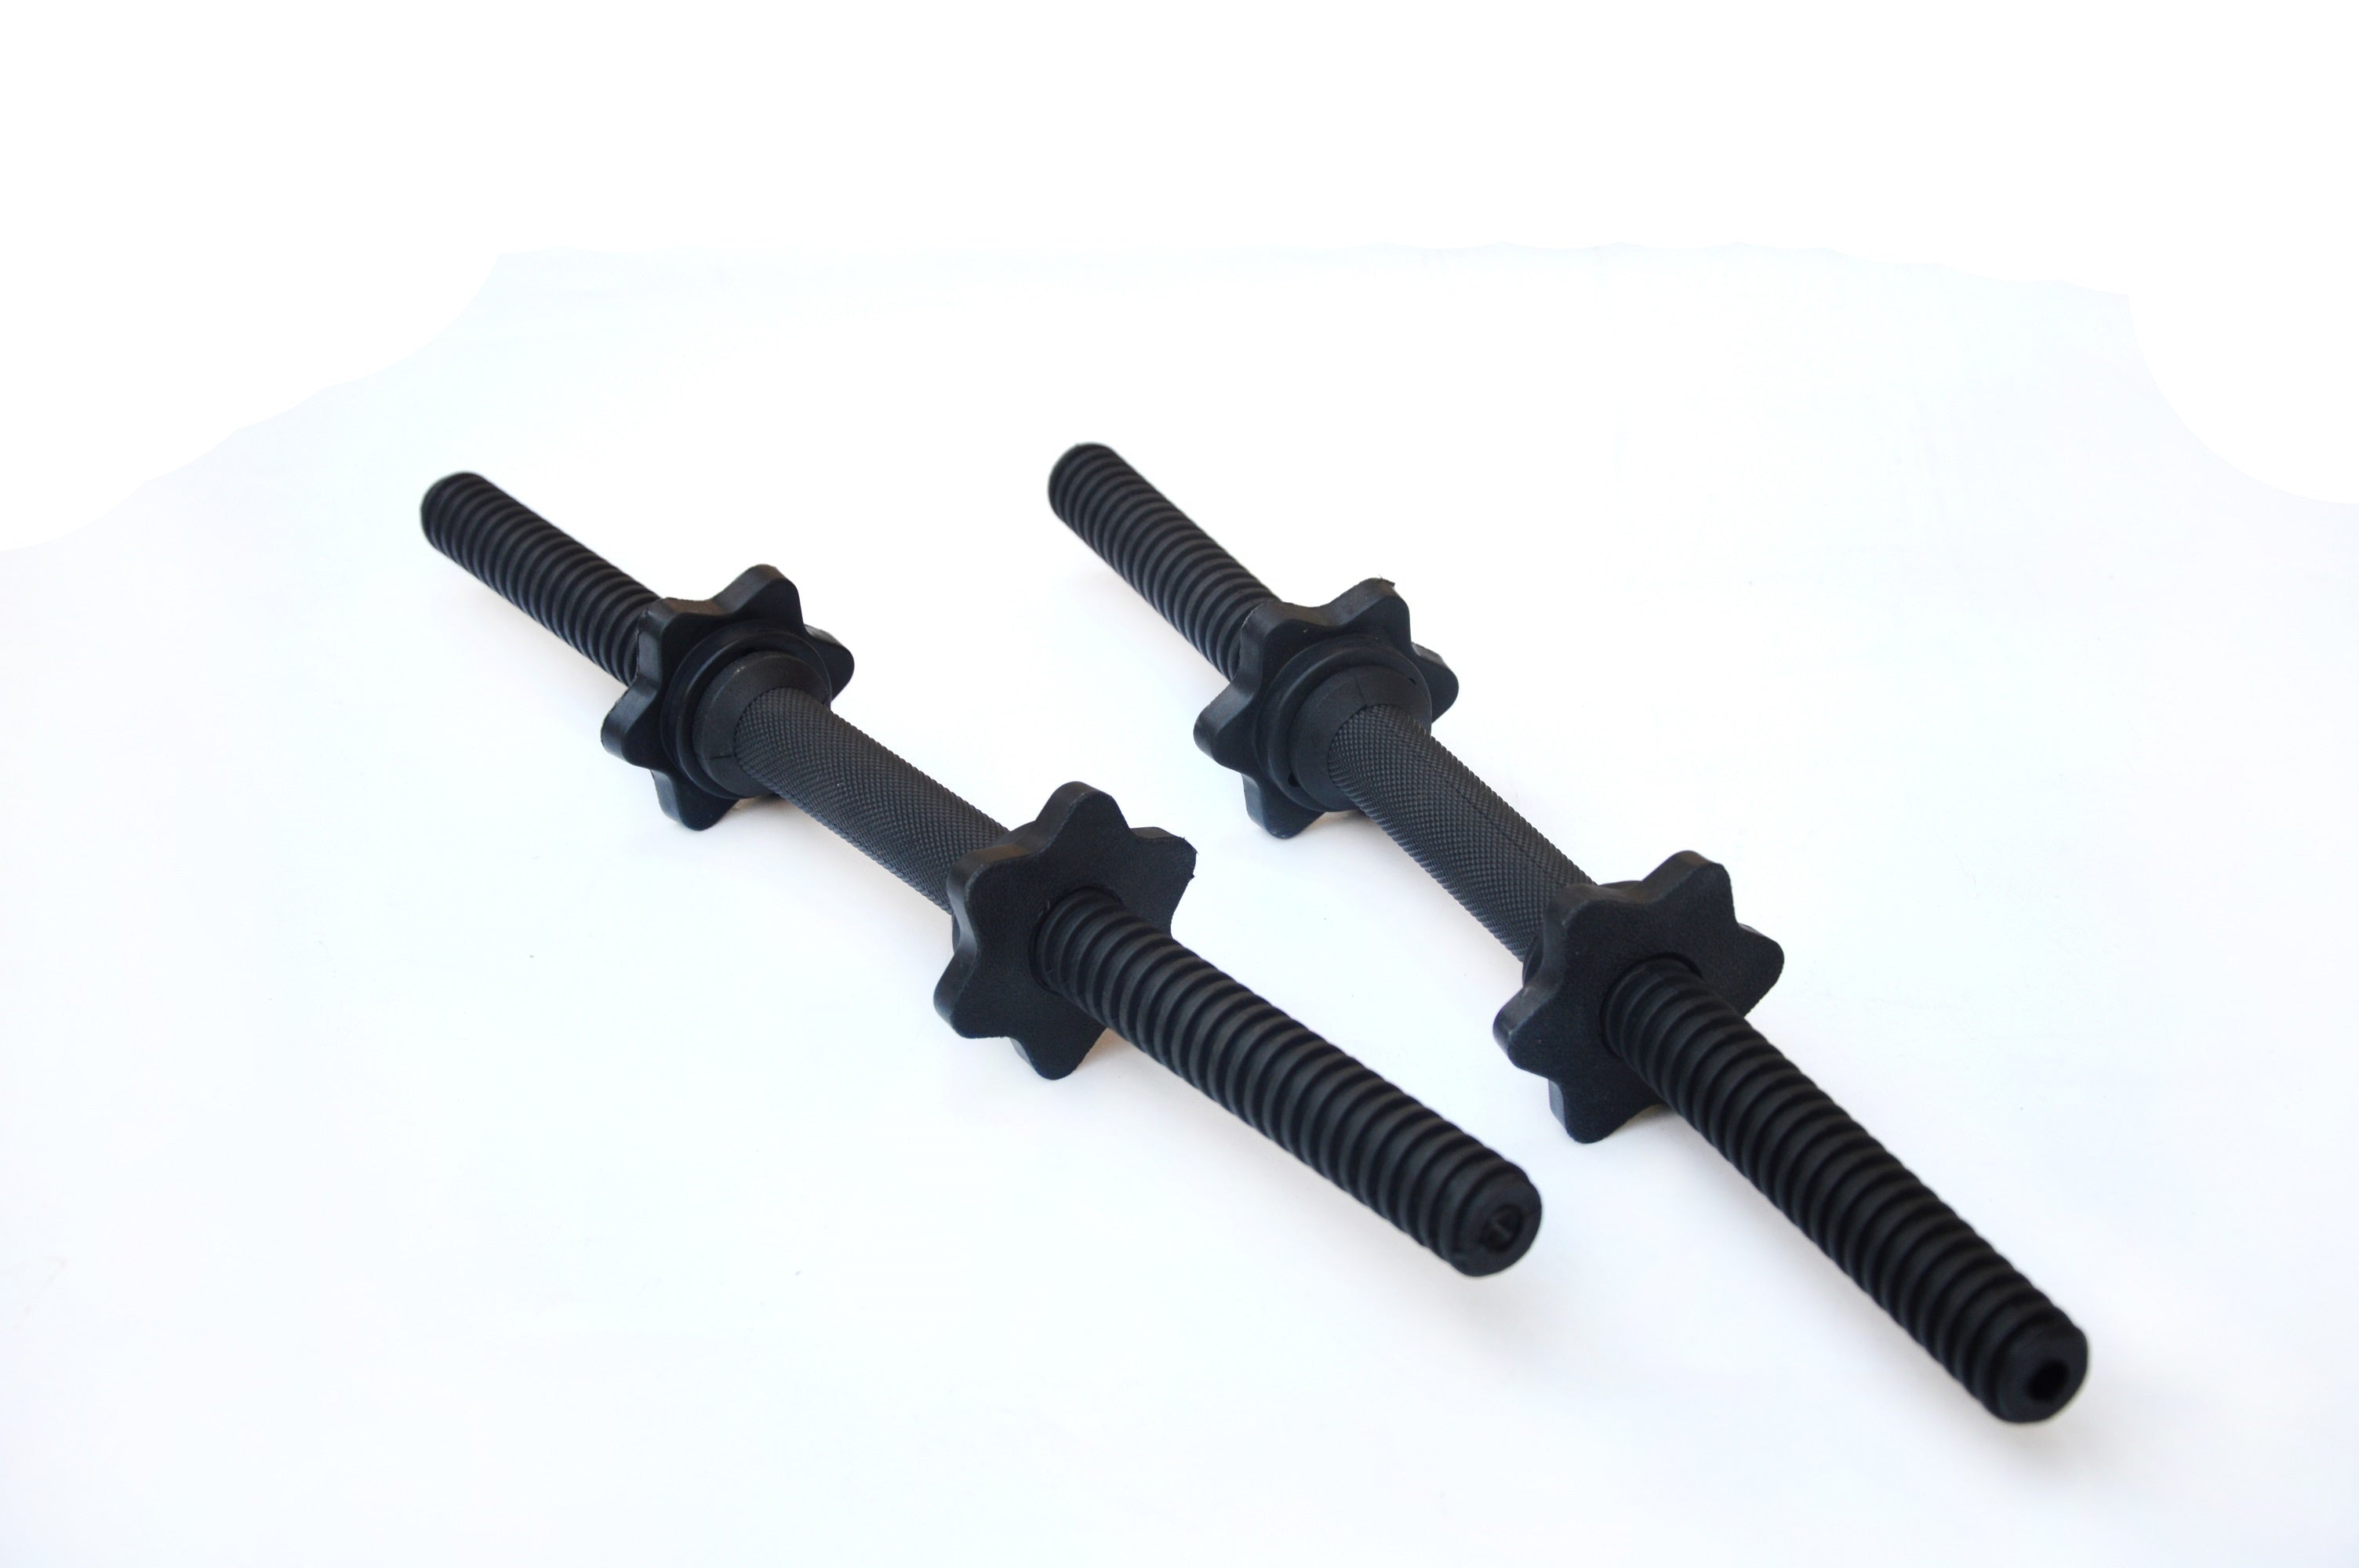 45cm - 1 Pair Dumbbell Bar 25mm Diameter - PVC Coated Dumbell Handle